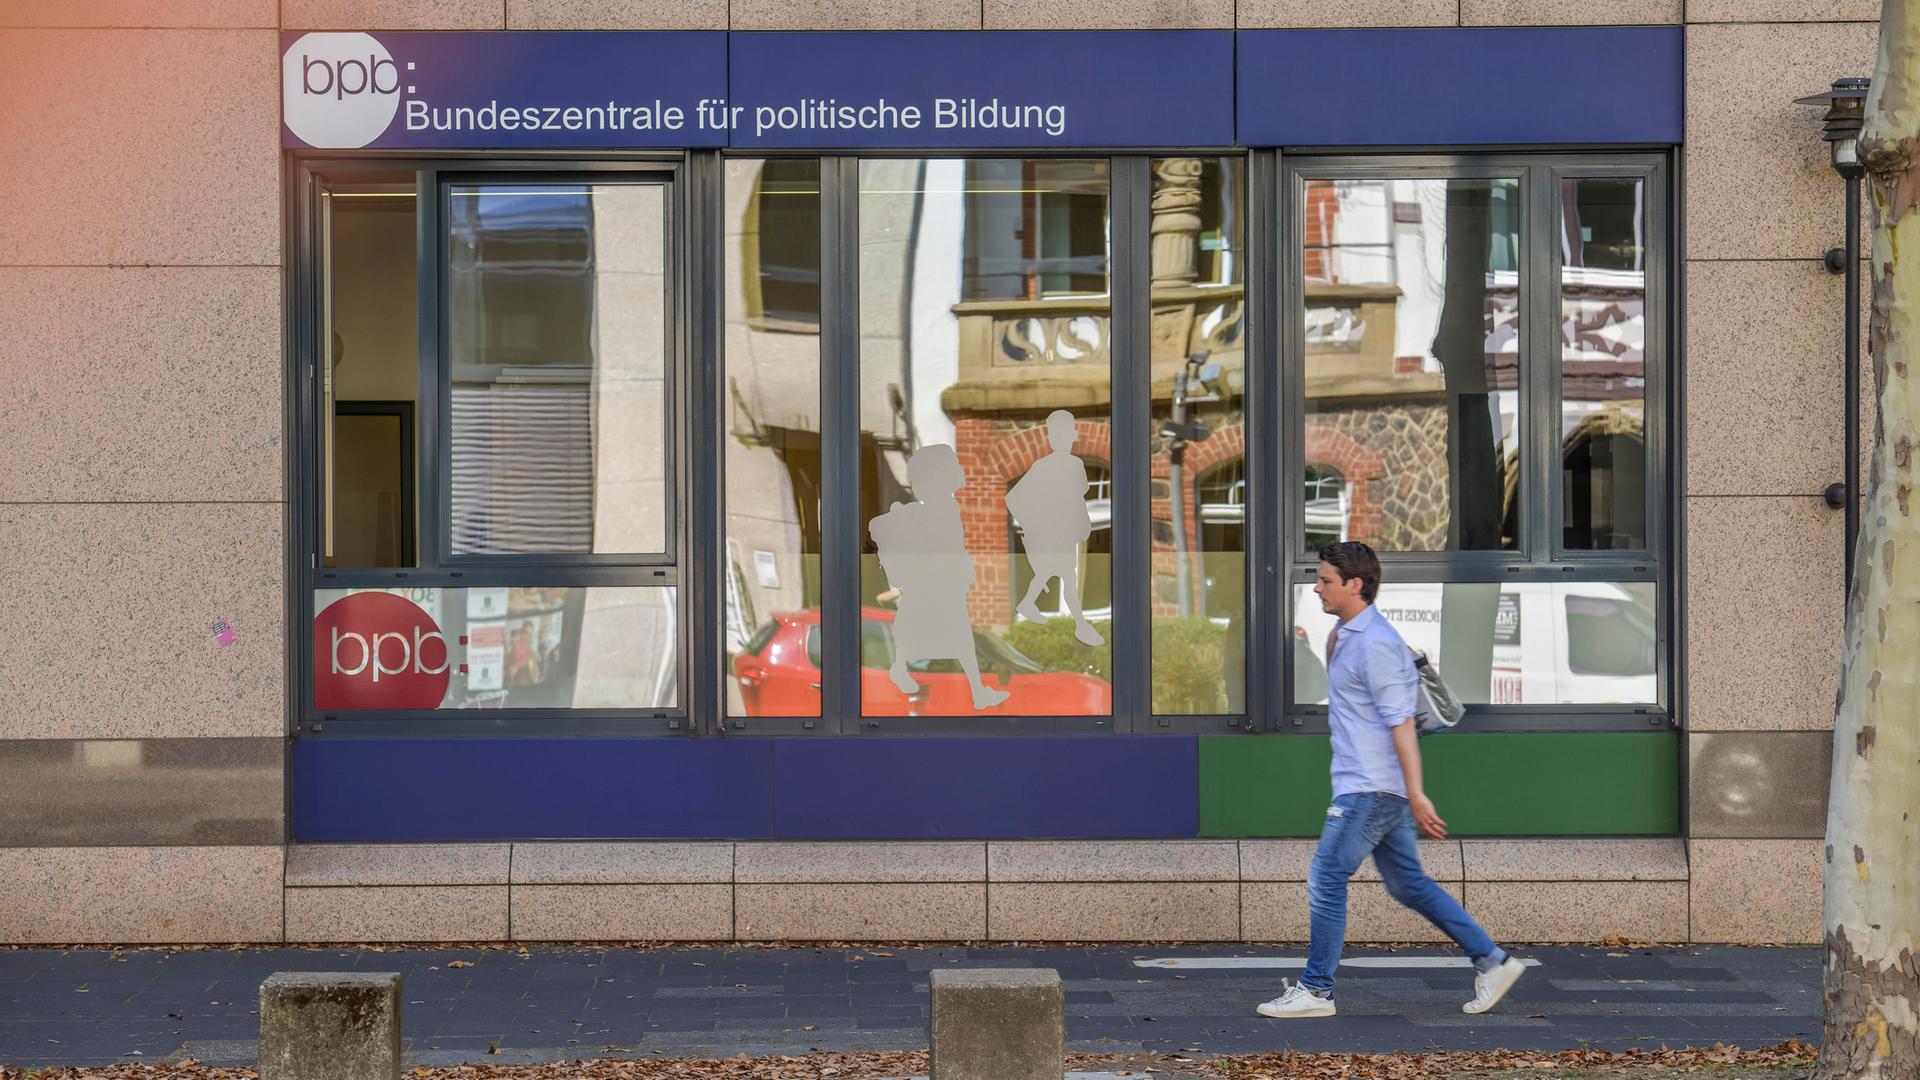 Schaufenster der Bundeszentrale für politische Bildung in Bonn, an dem ein Junge vorbeigeht.